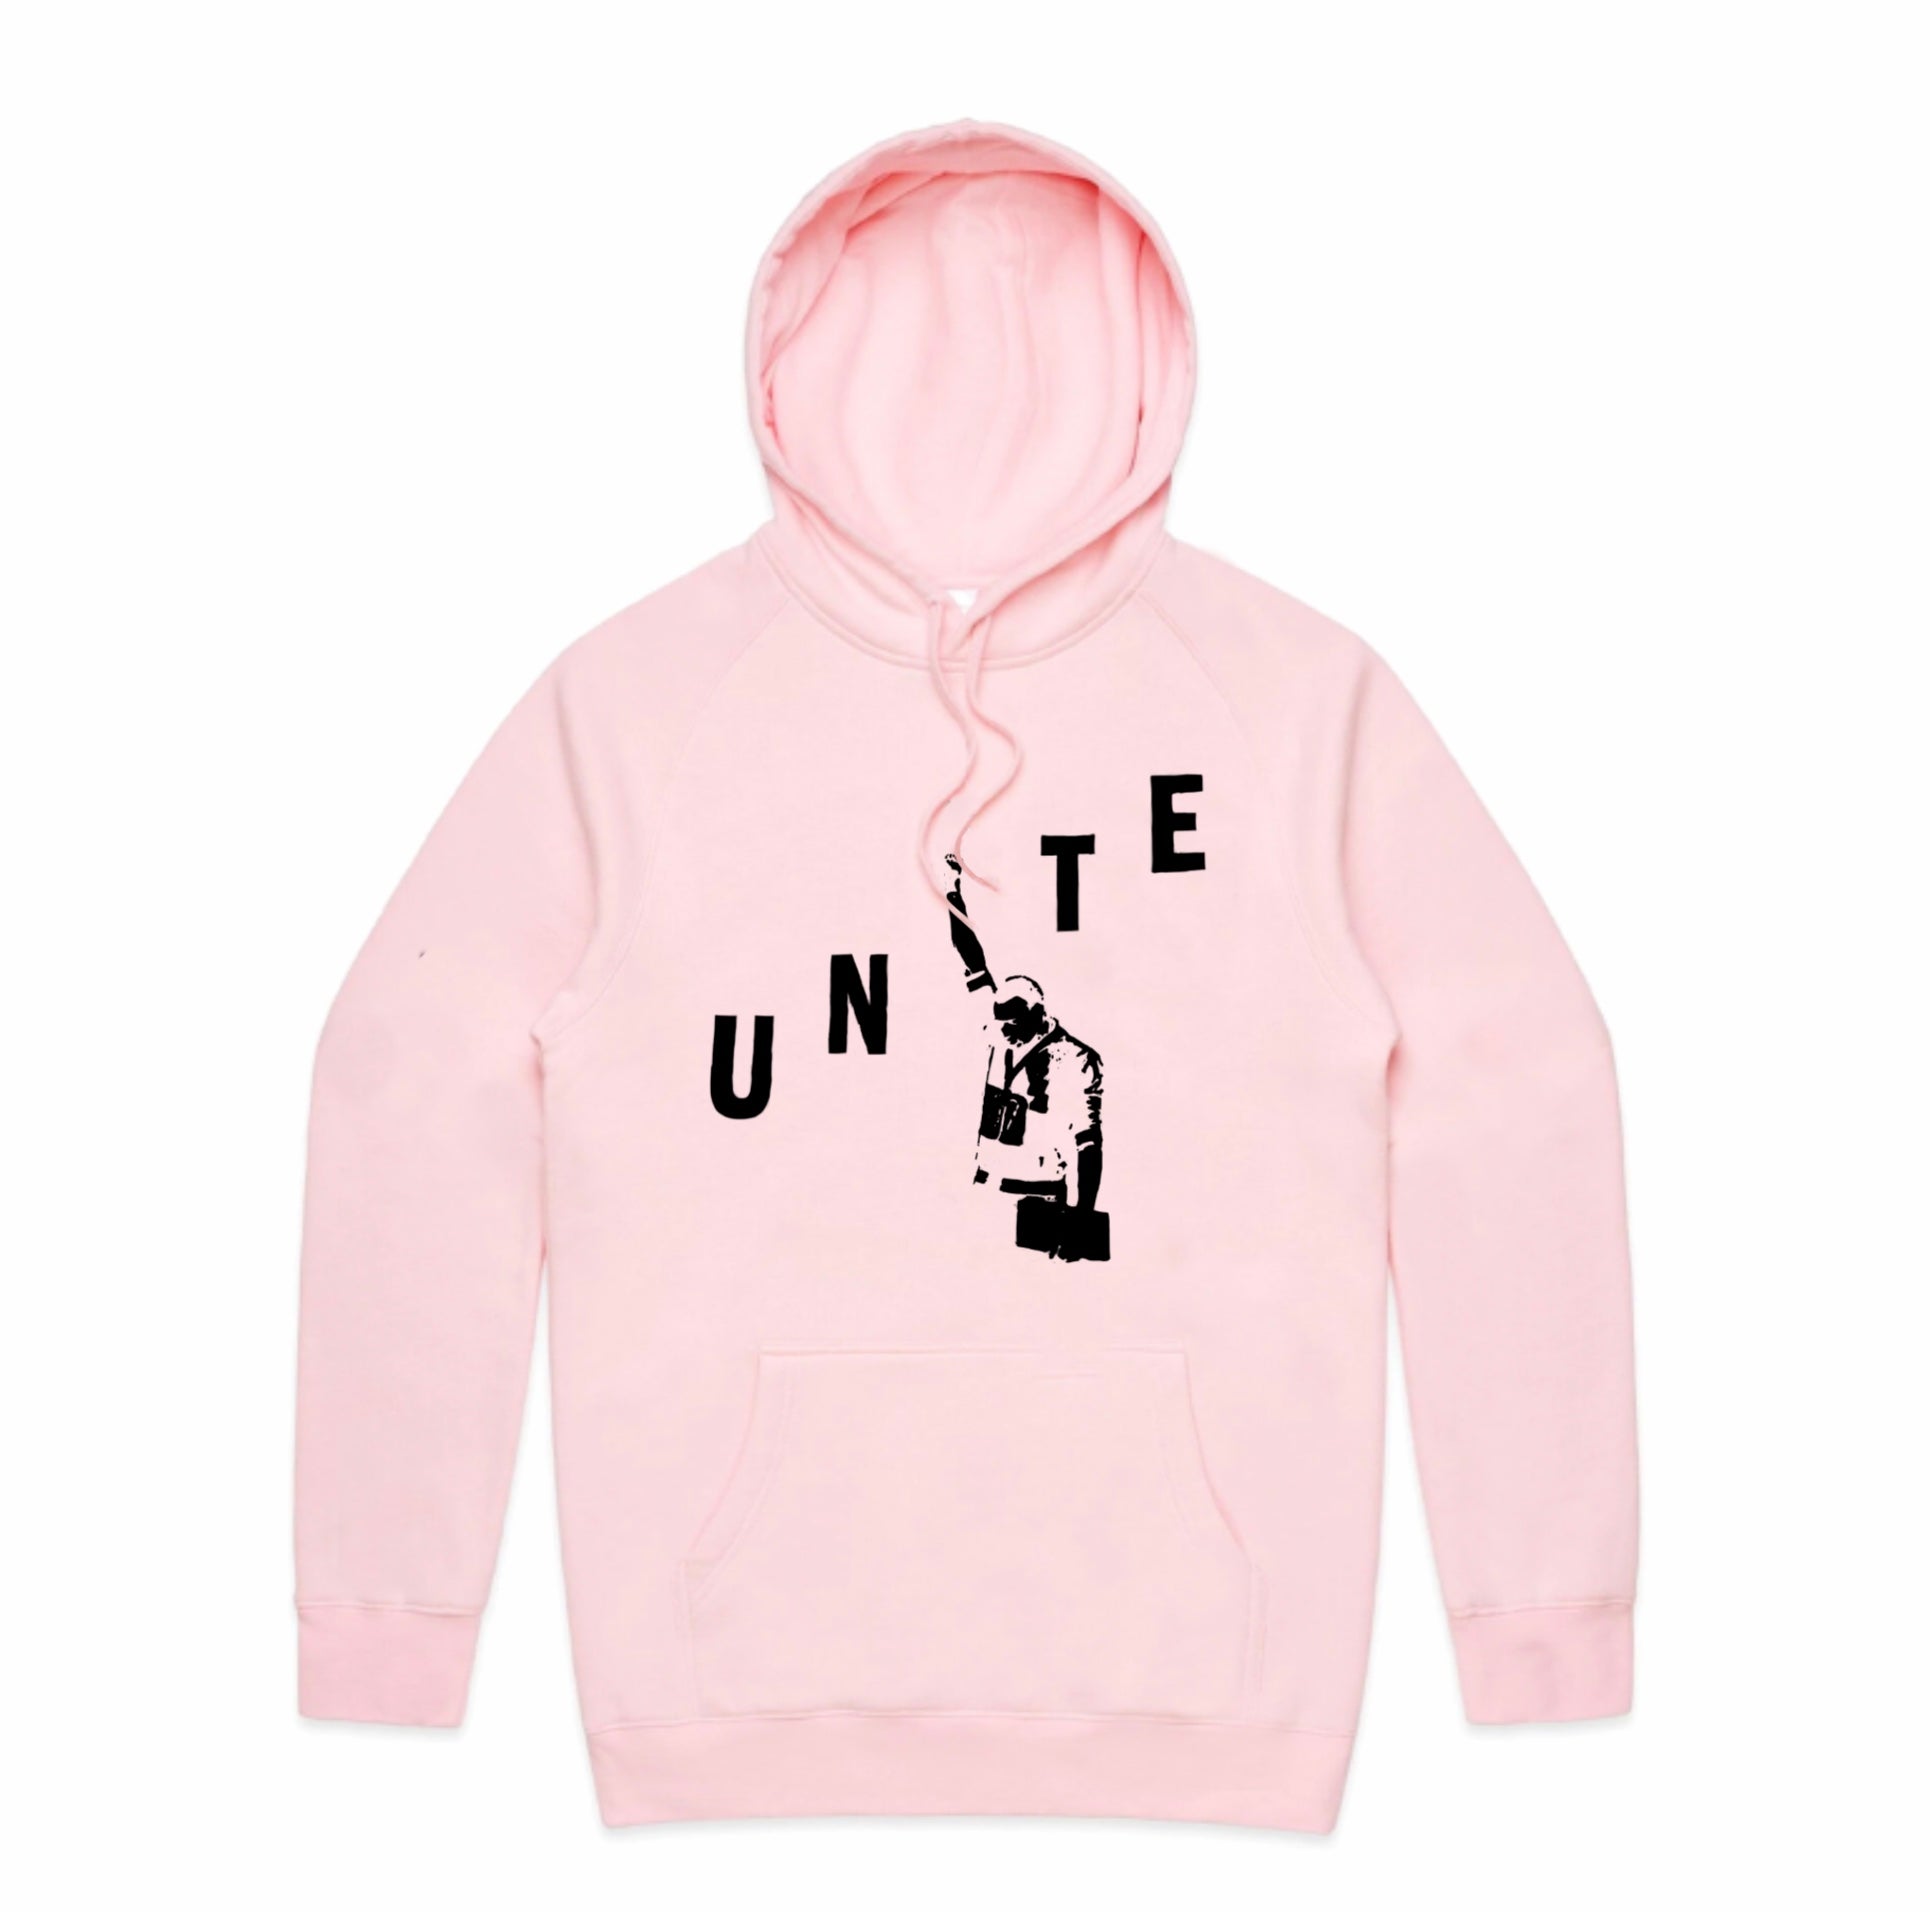 Unite Hoodie - Pink